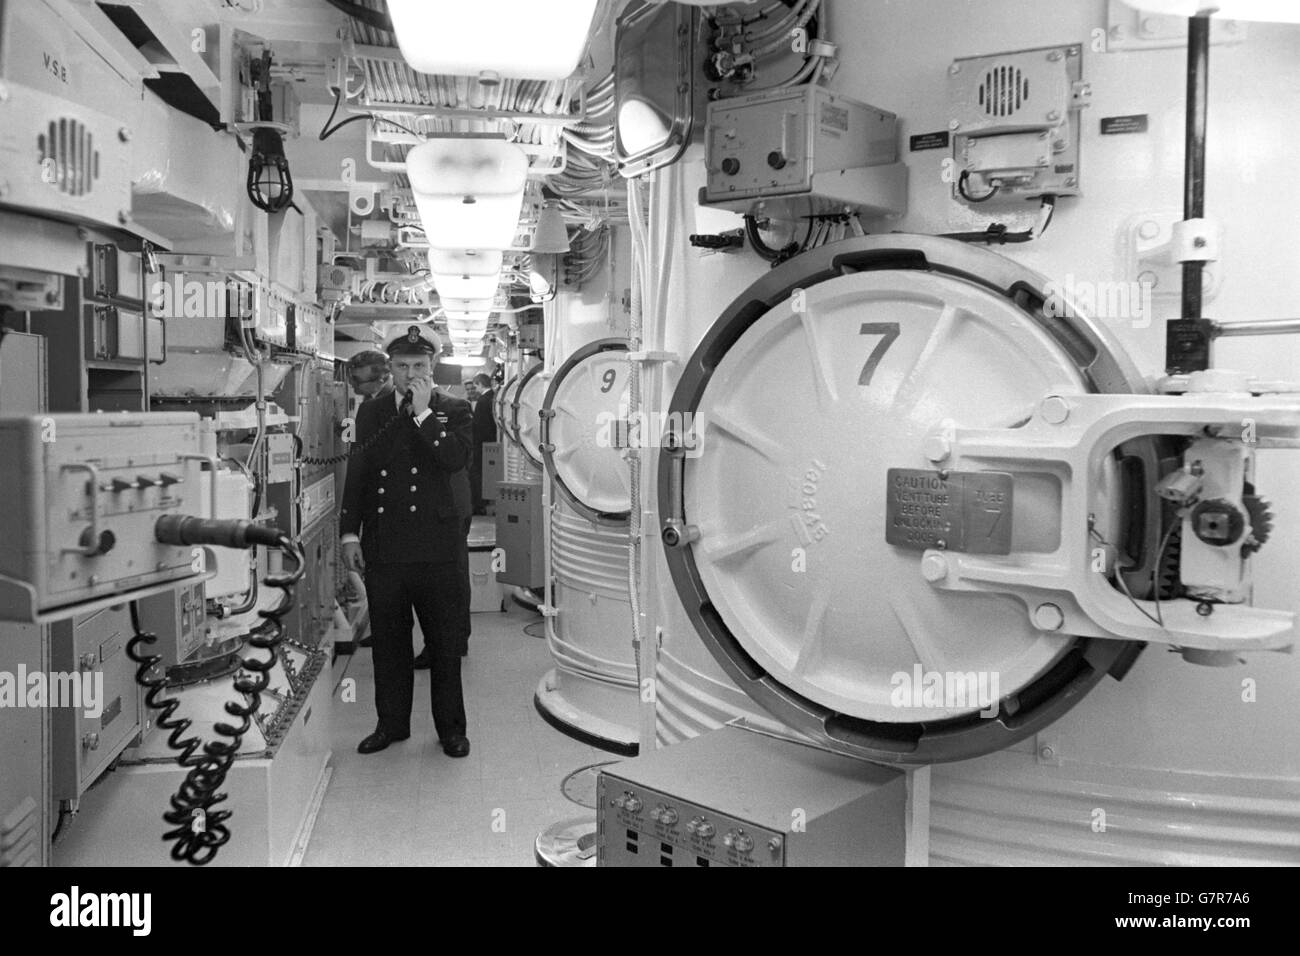 Militär - Polaris Submarine - HMS-Resolution - Vickers Shipyard, Barrow-in-Furness. 350 Millionen, wird die Royal Navy bis 1970 beitreten. Stockfoto